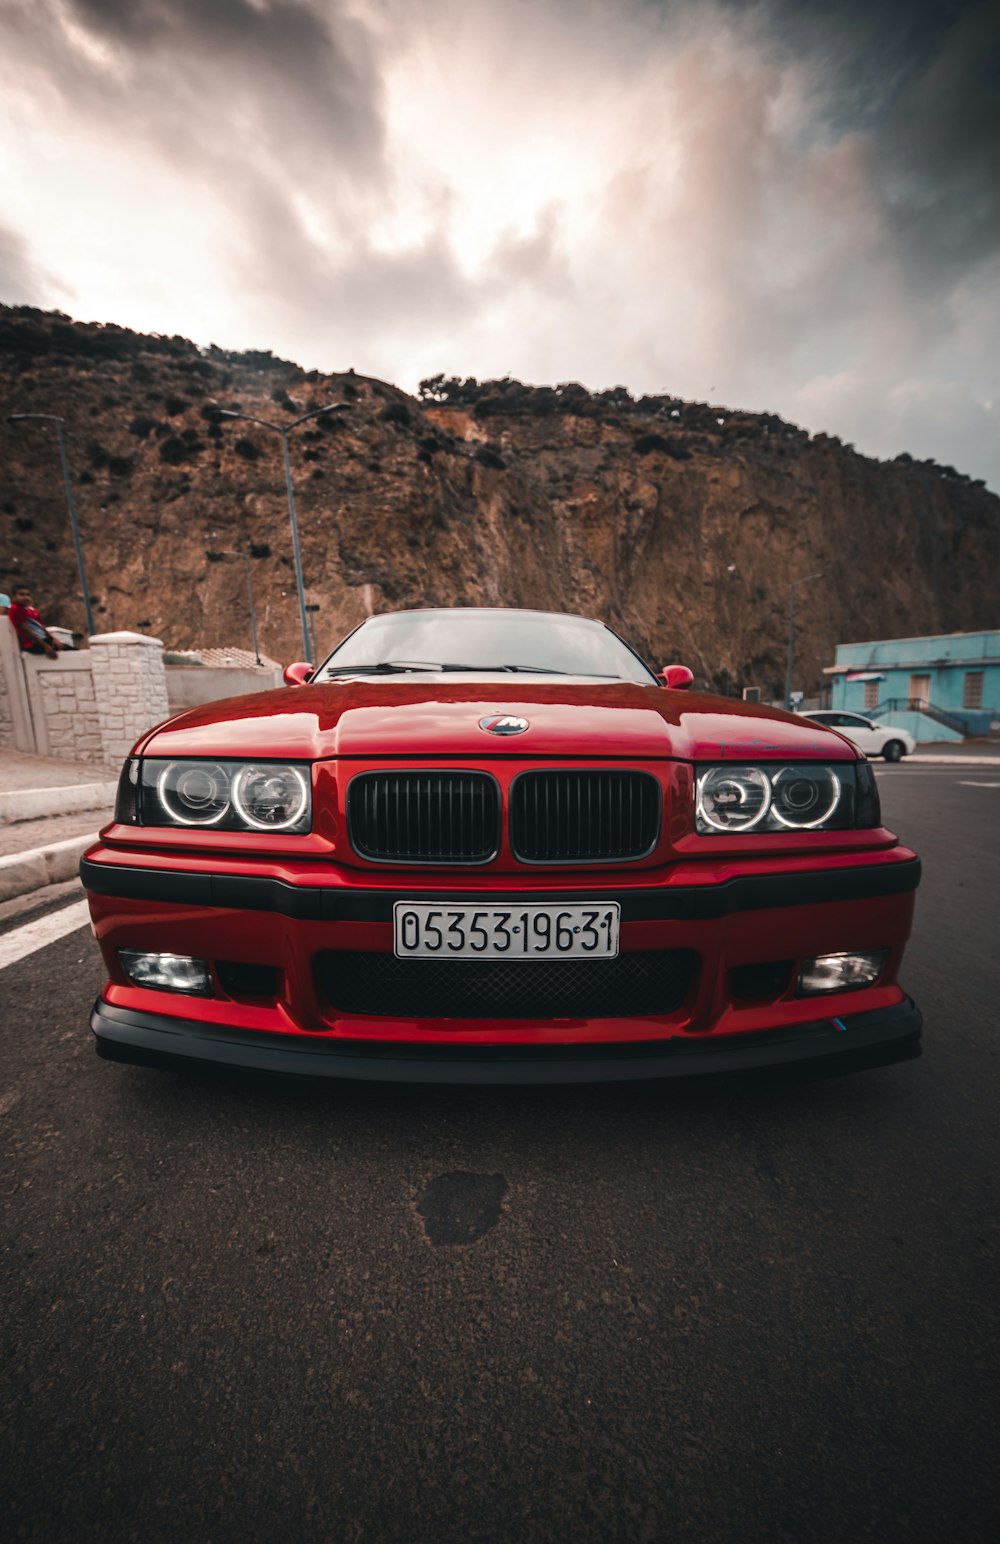 Voiture BMW rouge sur la route pendant la journée